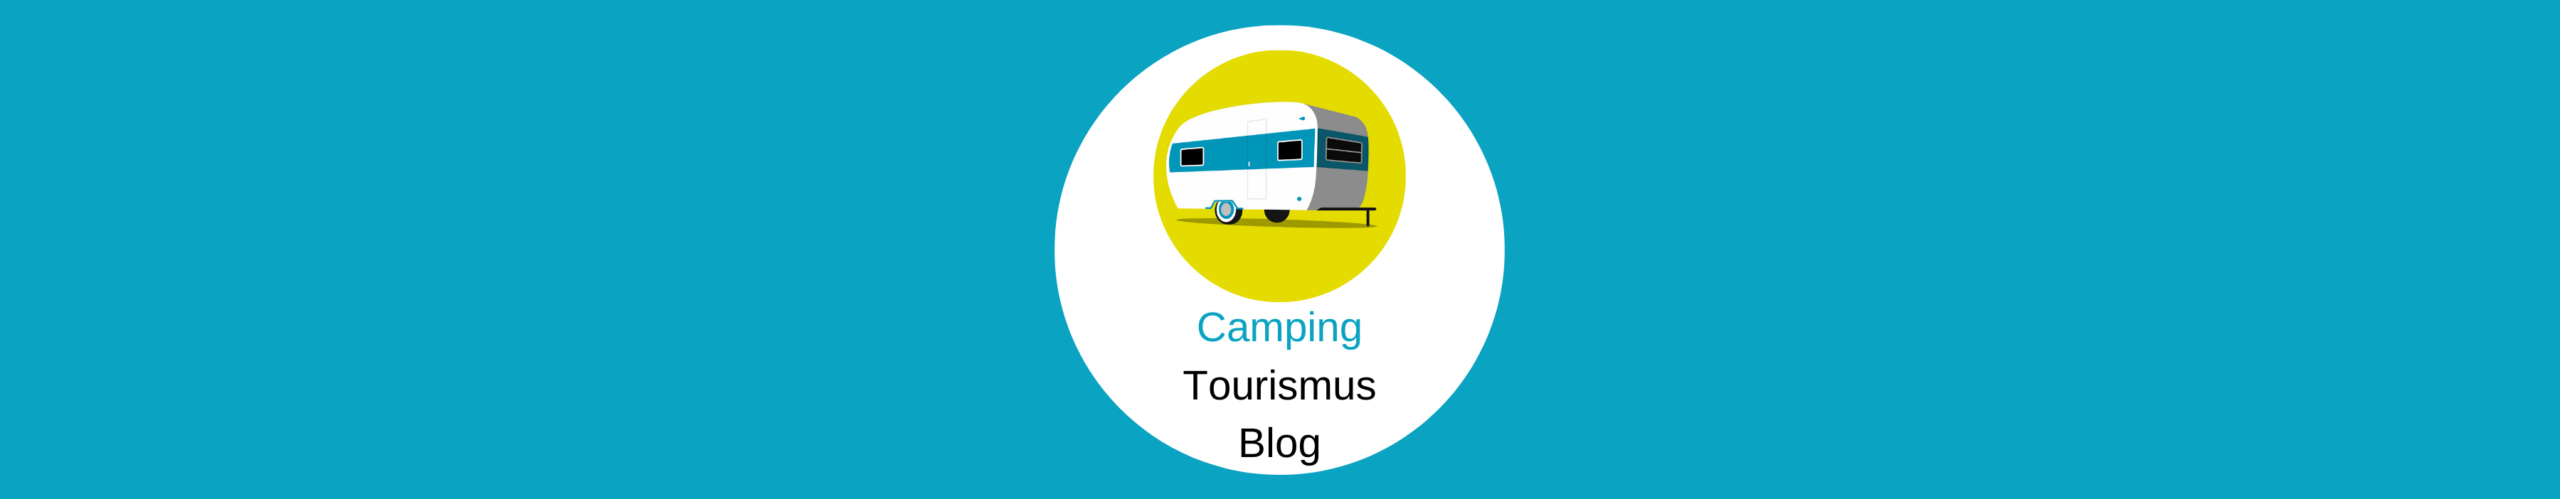 Camping-Tourismus-Blog